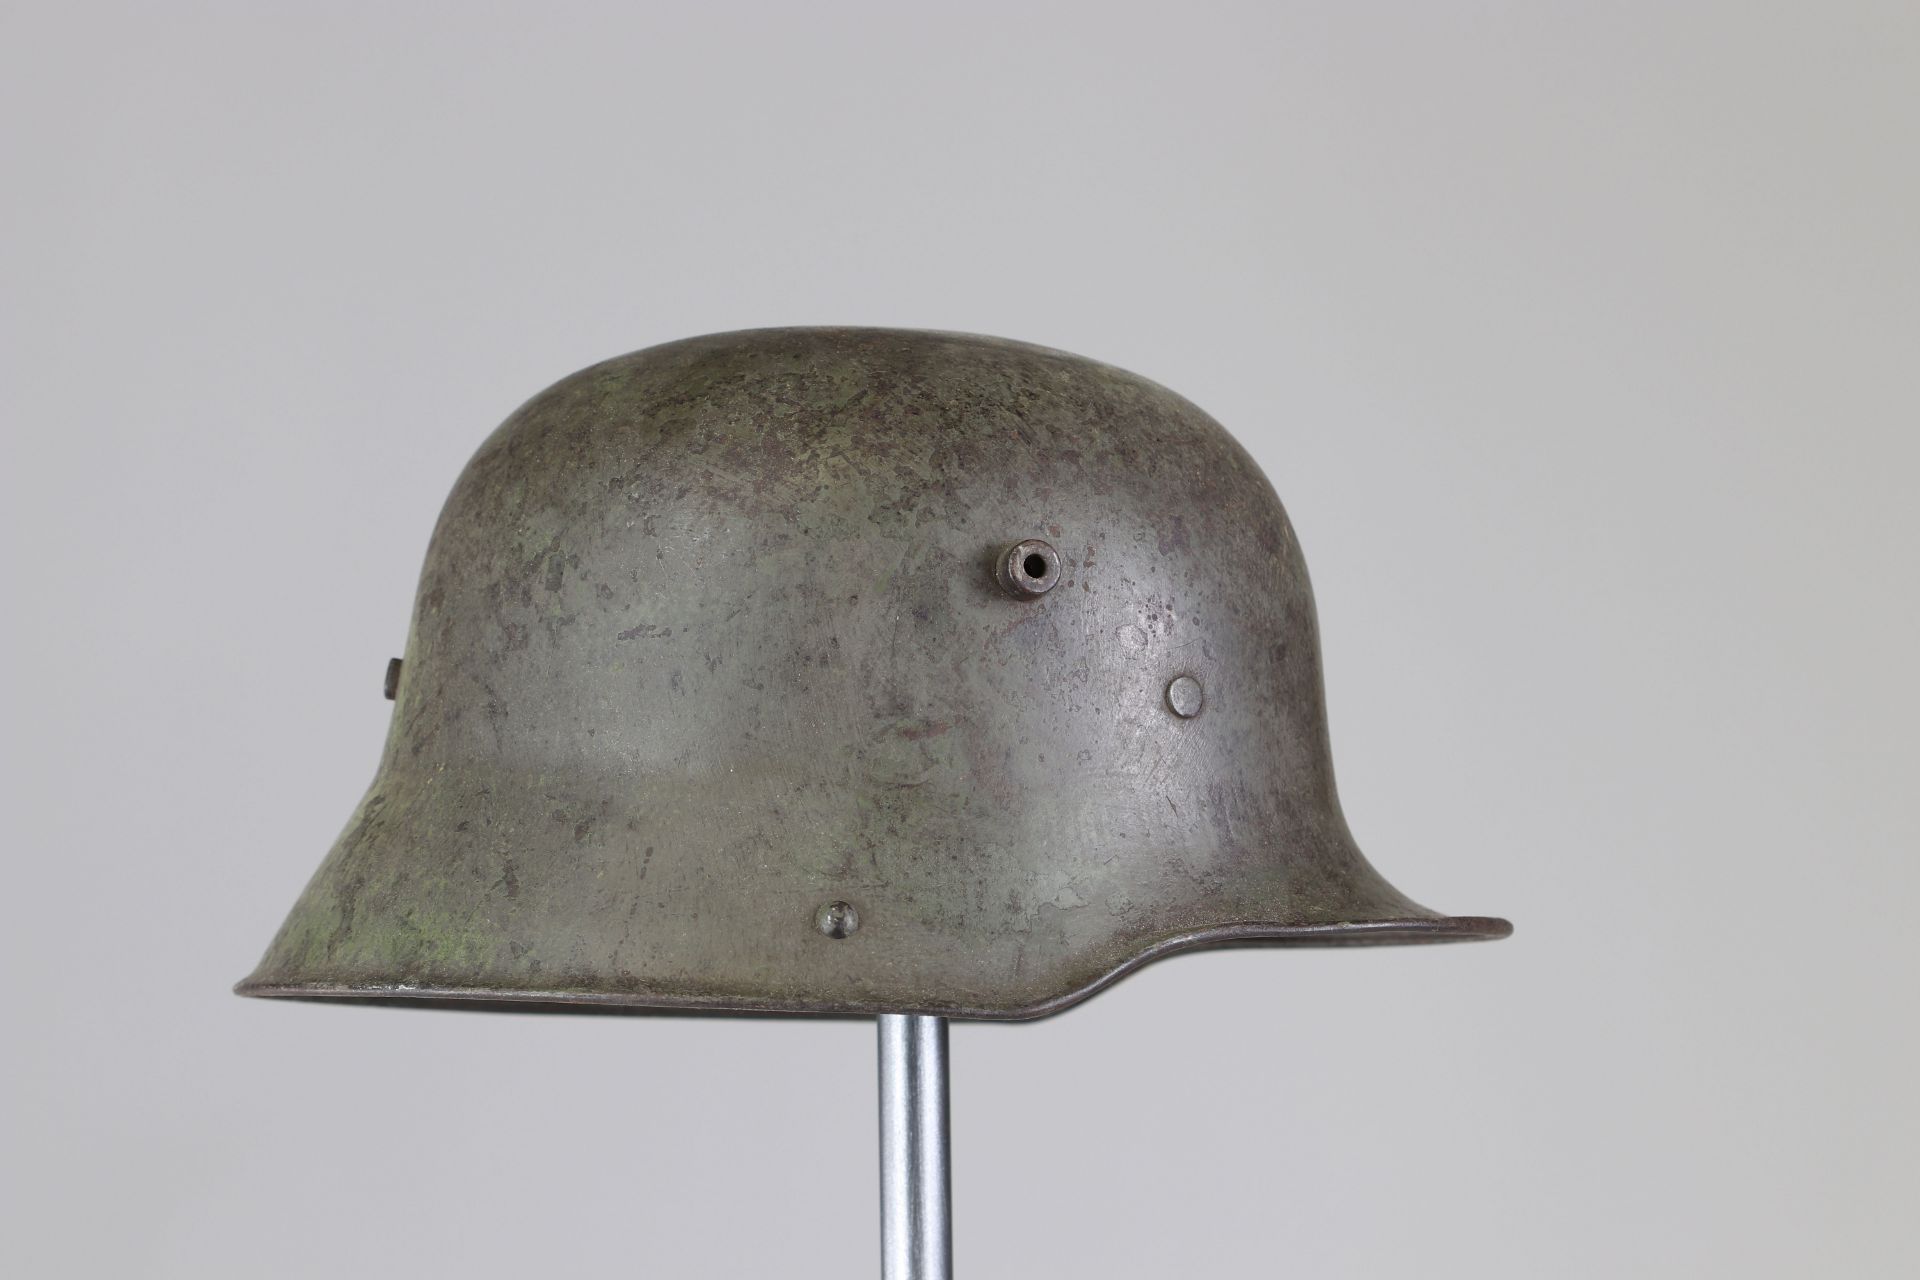 Germany ww1 helmet Mitralleur badge - Image 2 of 4